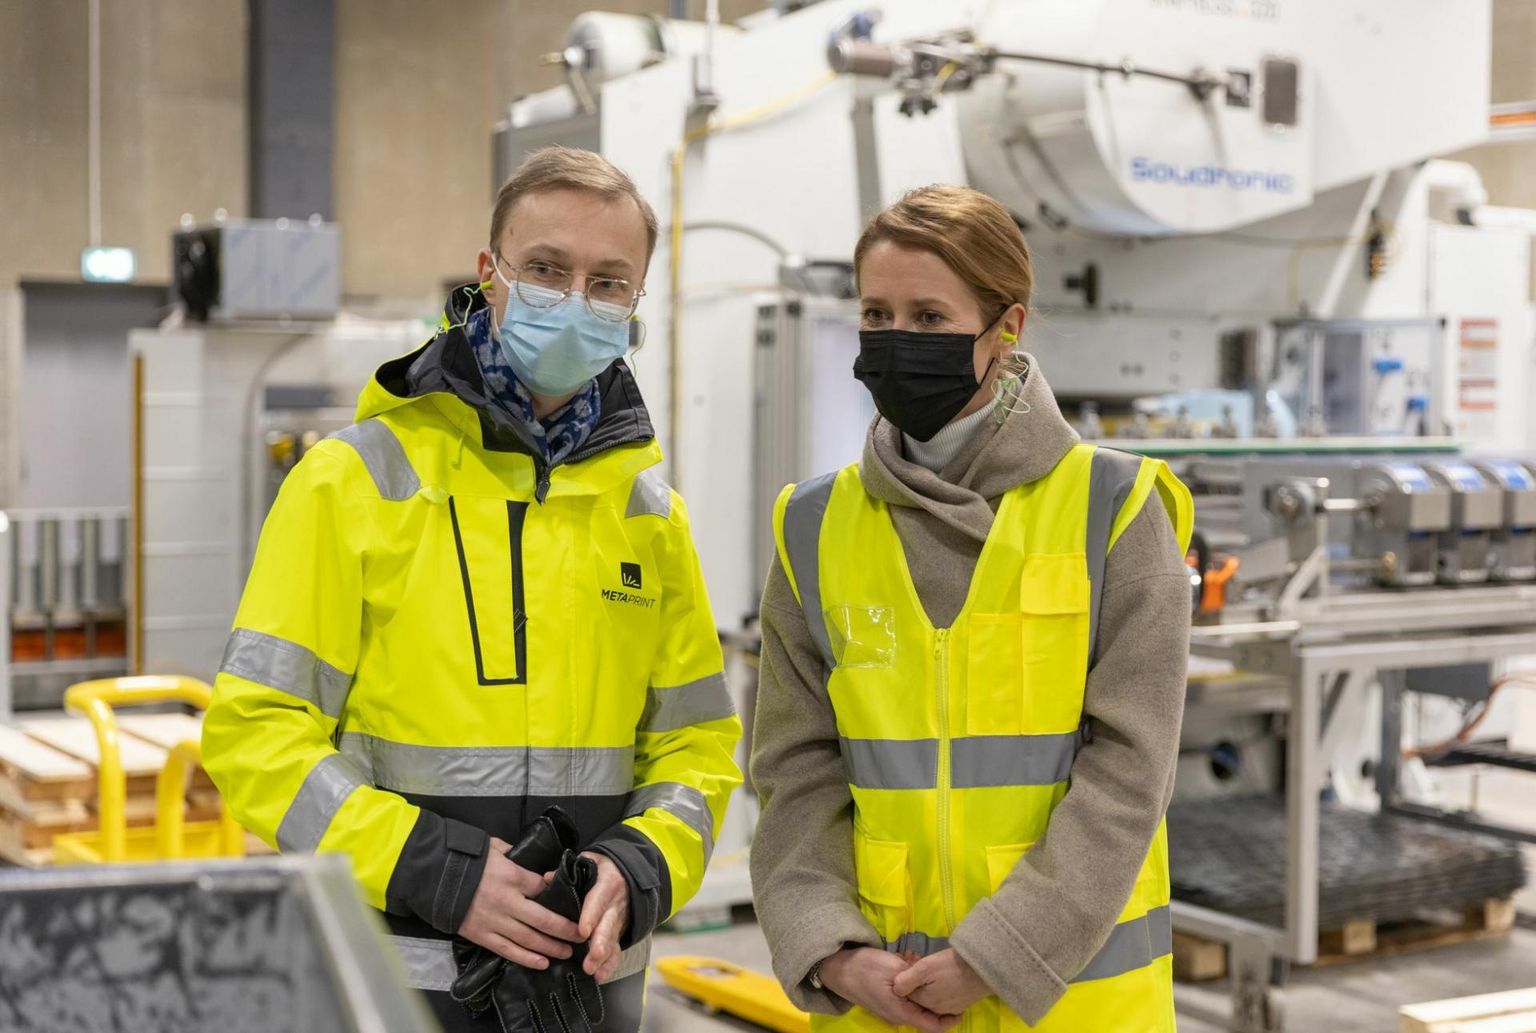 Estonian Prime Minister Kaja Kallas visited the factory of Metaprint on Jan. 28, 2022.